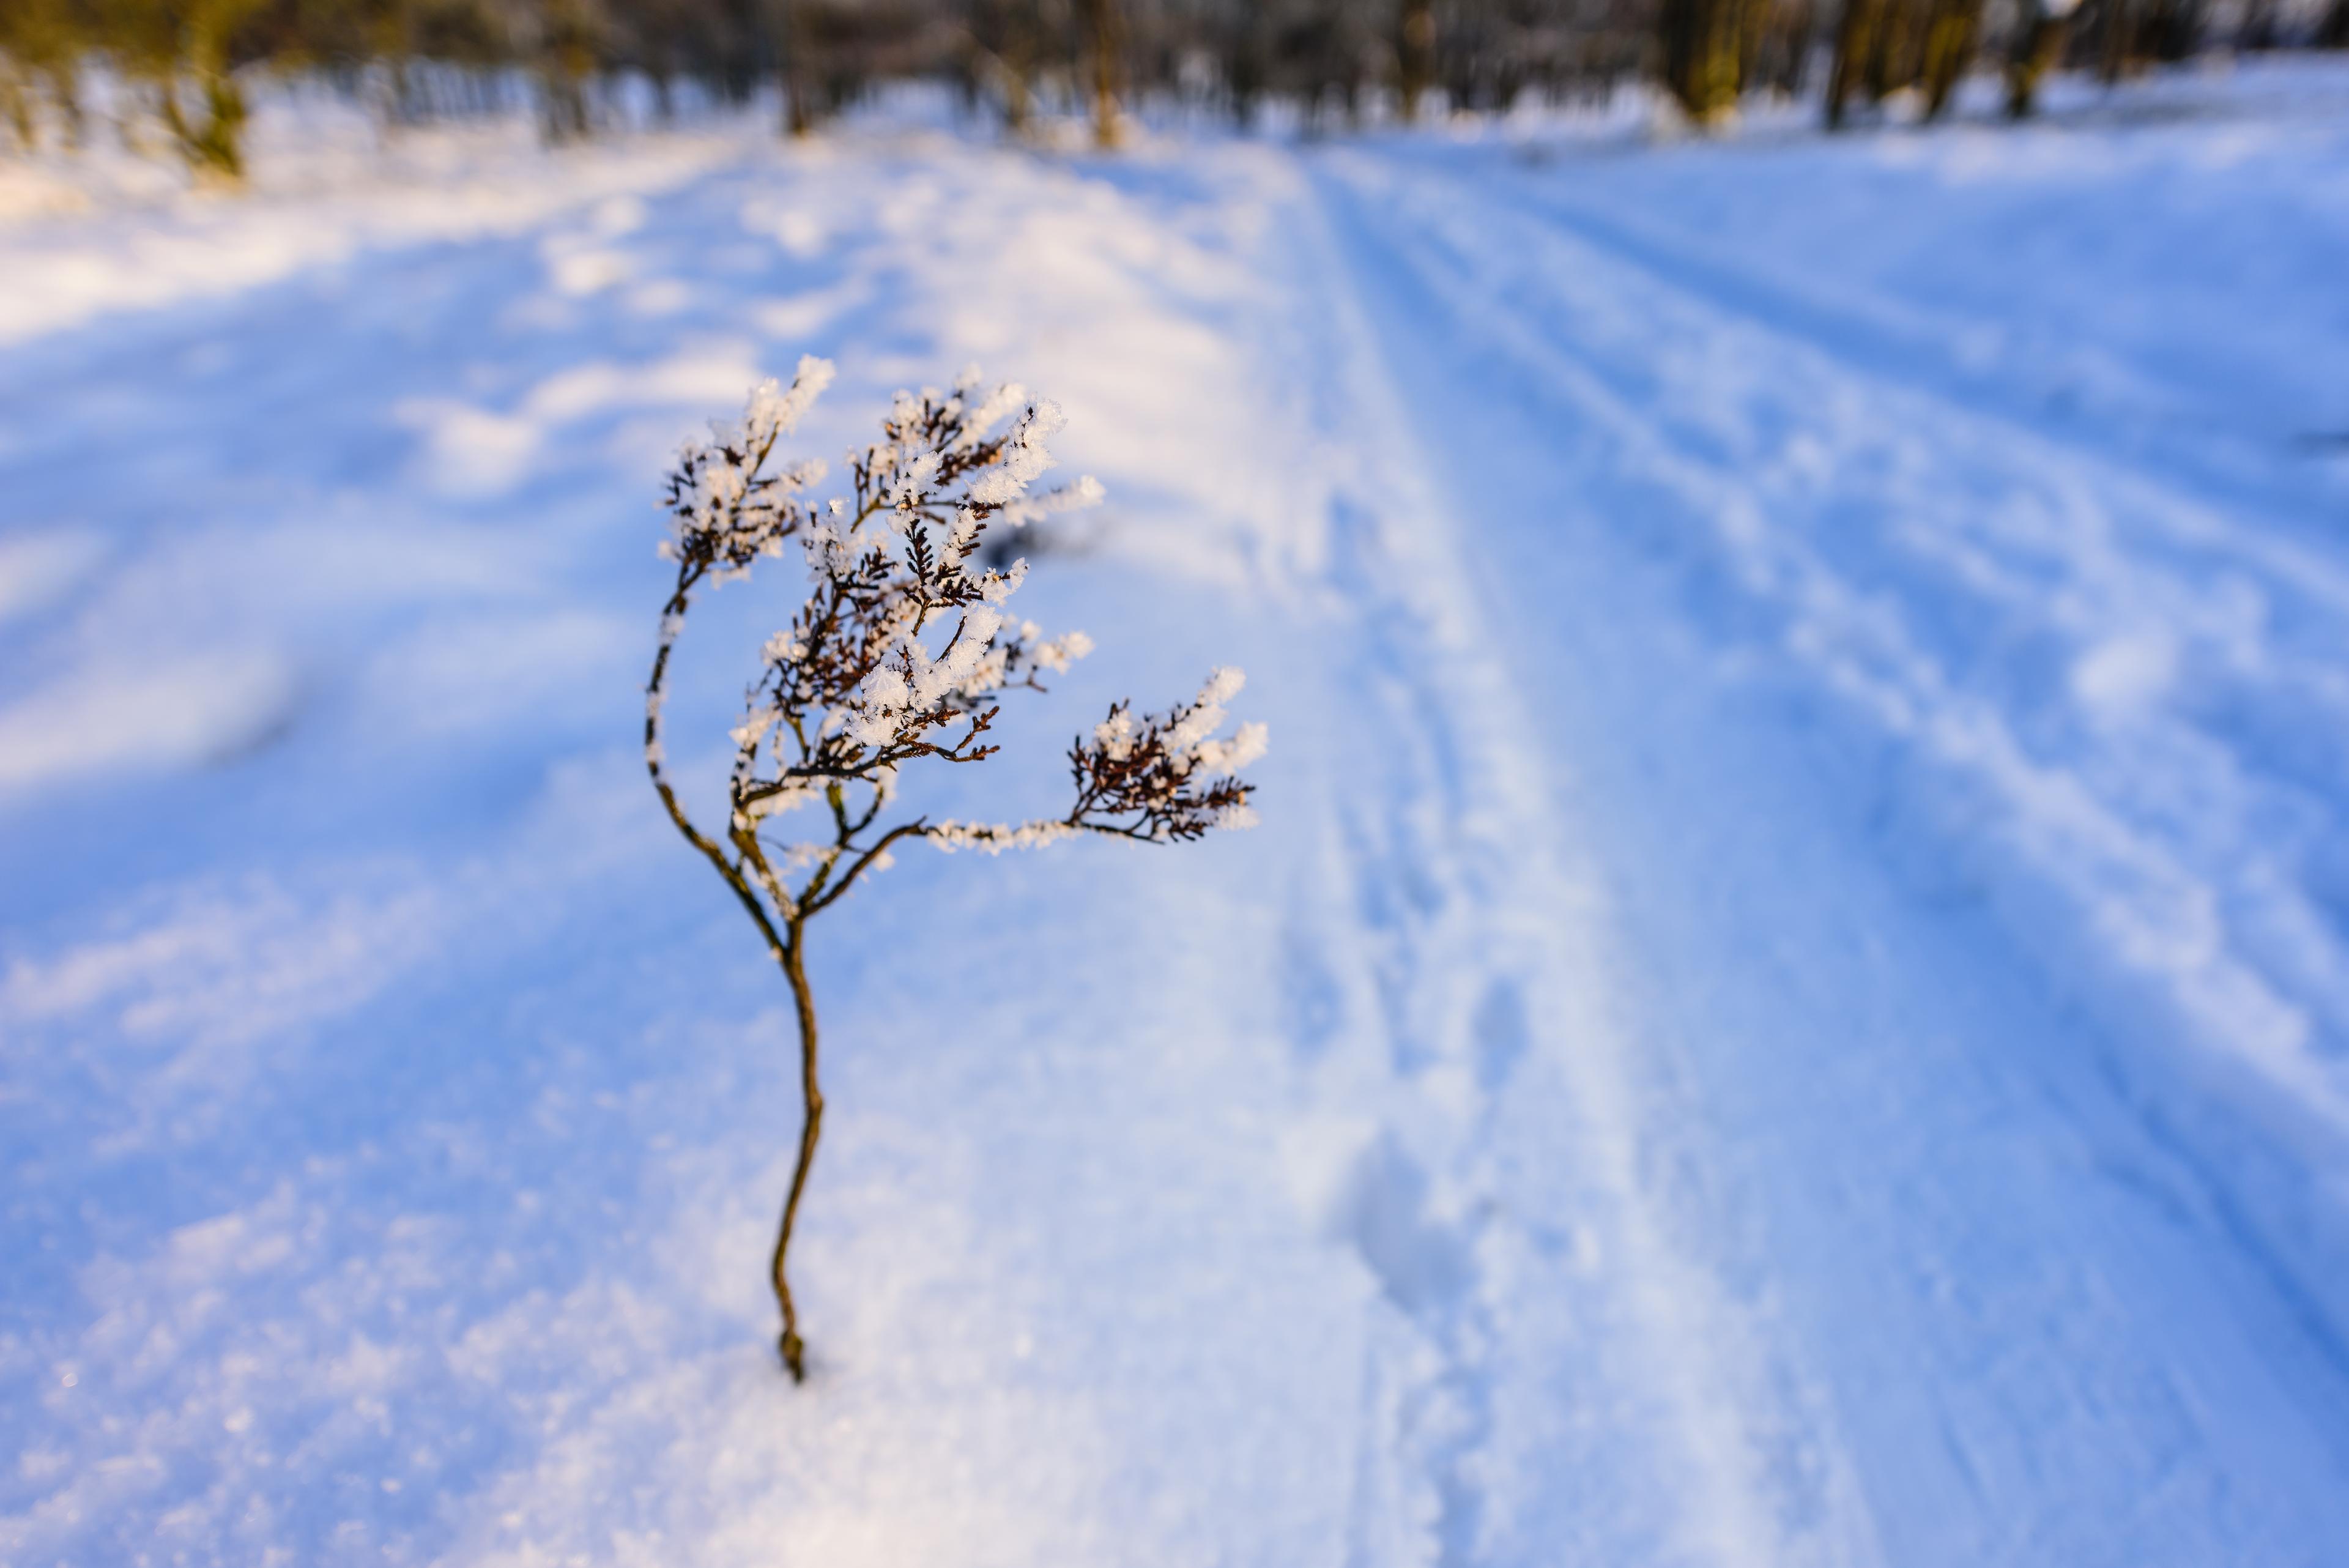 Winterwandern auf dem Heidschnuckenweg: Heidepflanze im Schnee